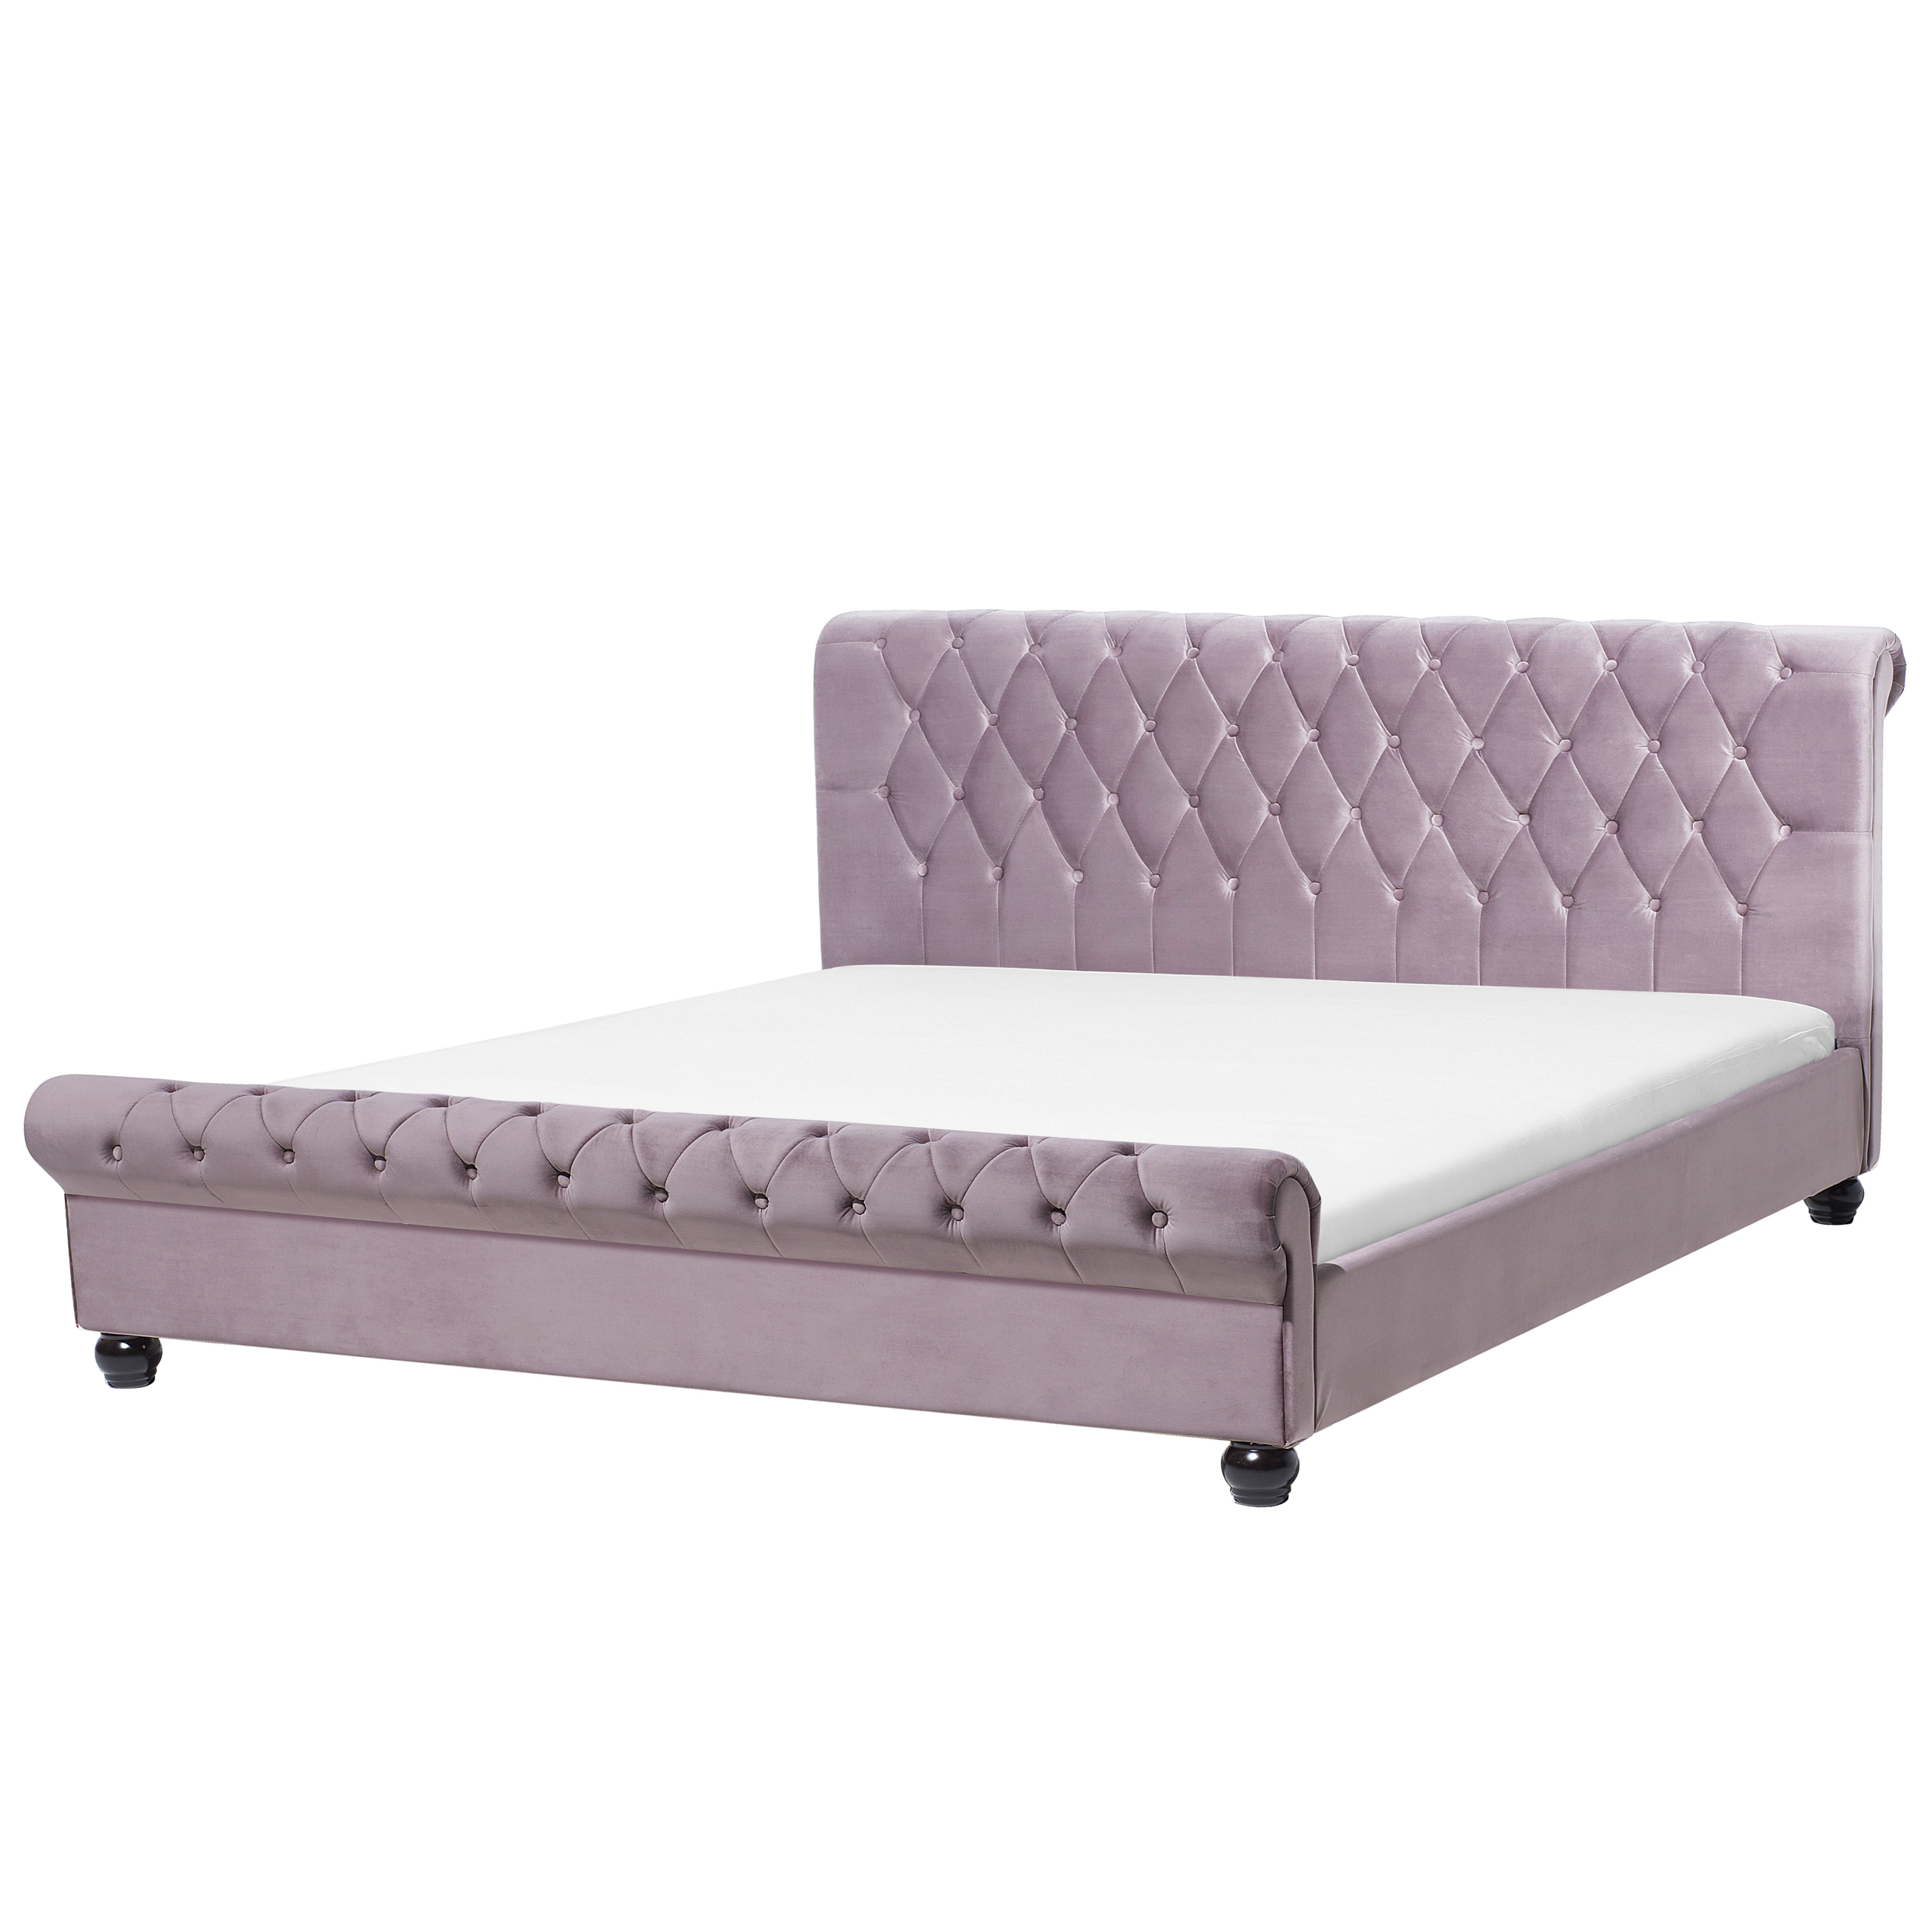 Beliani Bed Frame Pink Velvet Upholstery Black Wooden Legs Super King Size 6ft Buttoned Glam